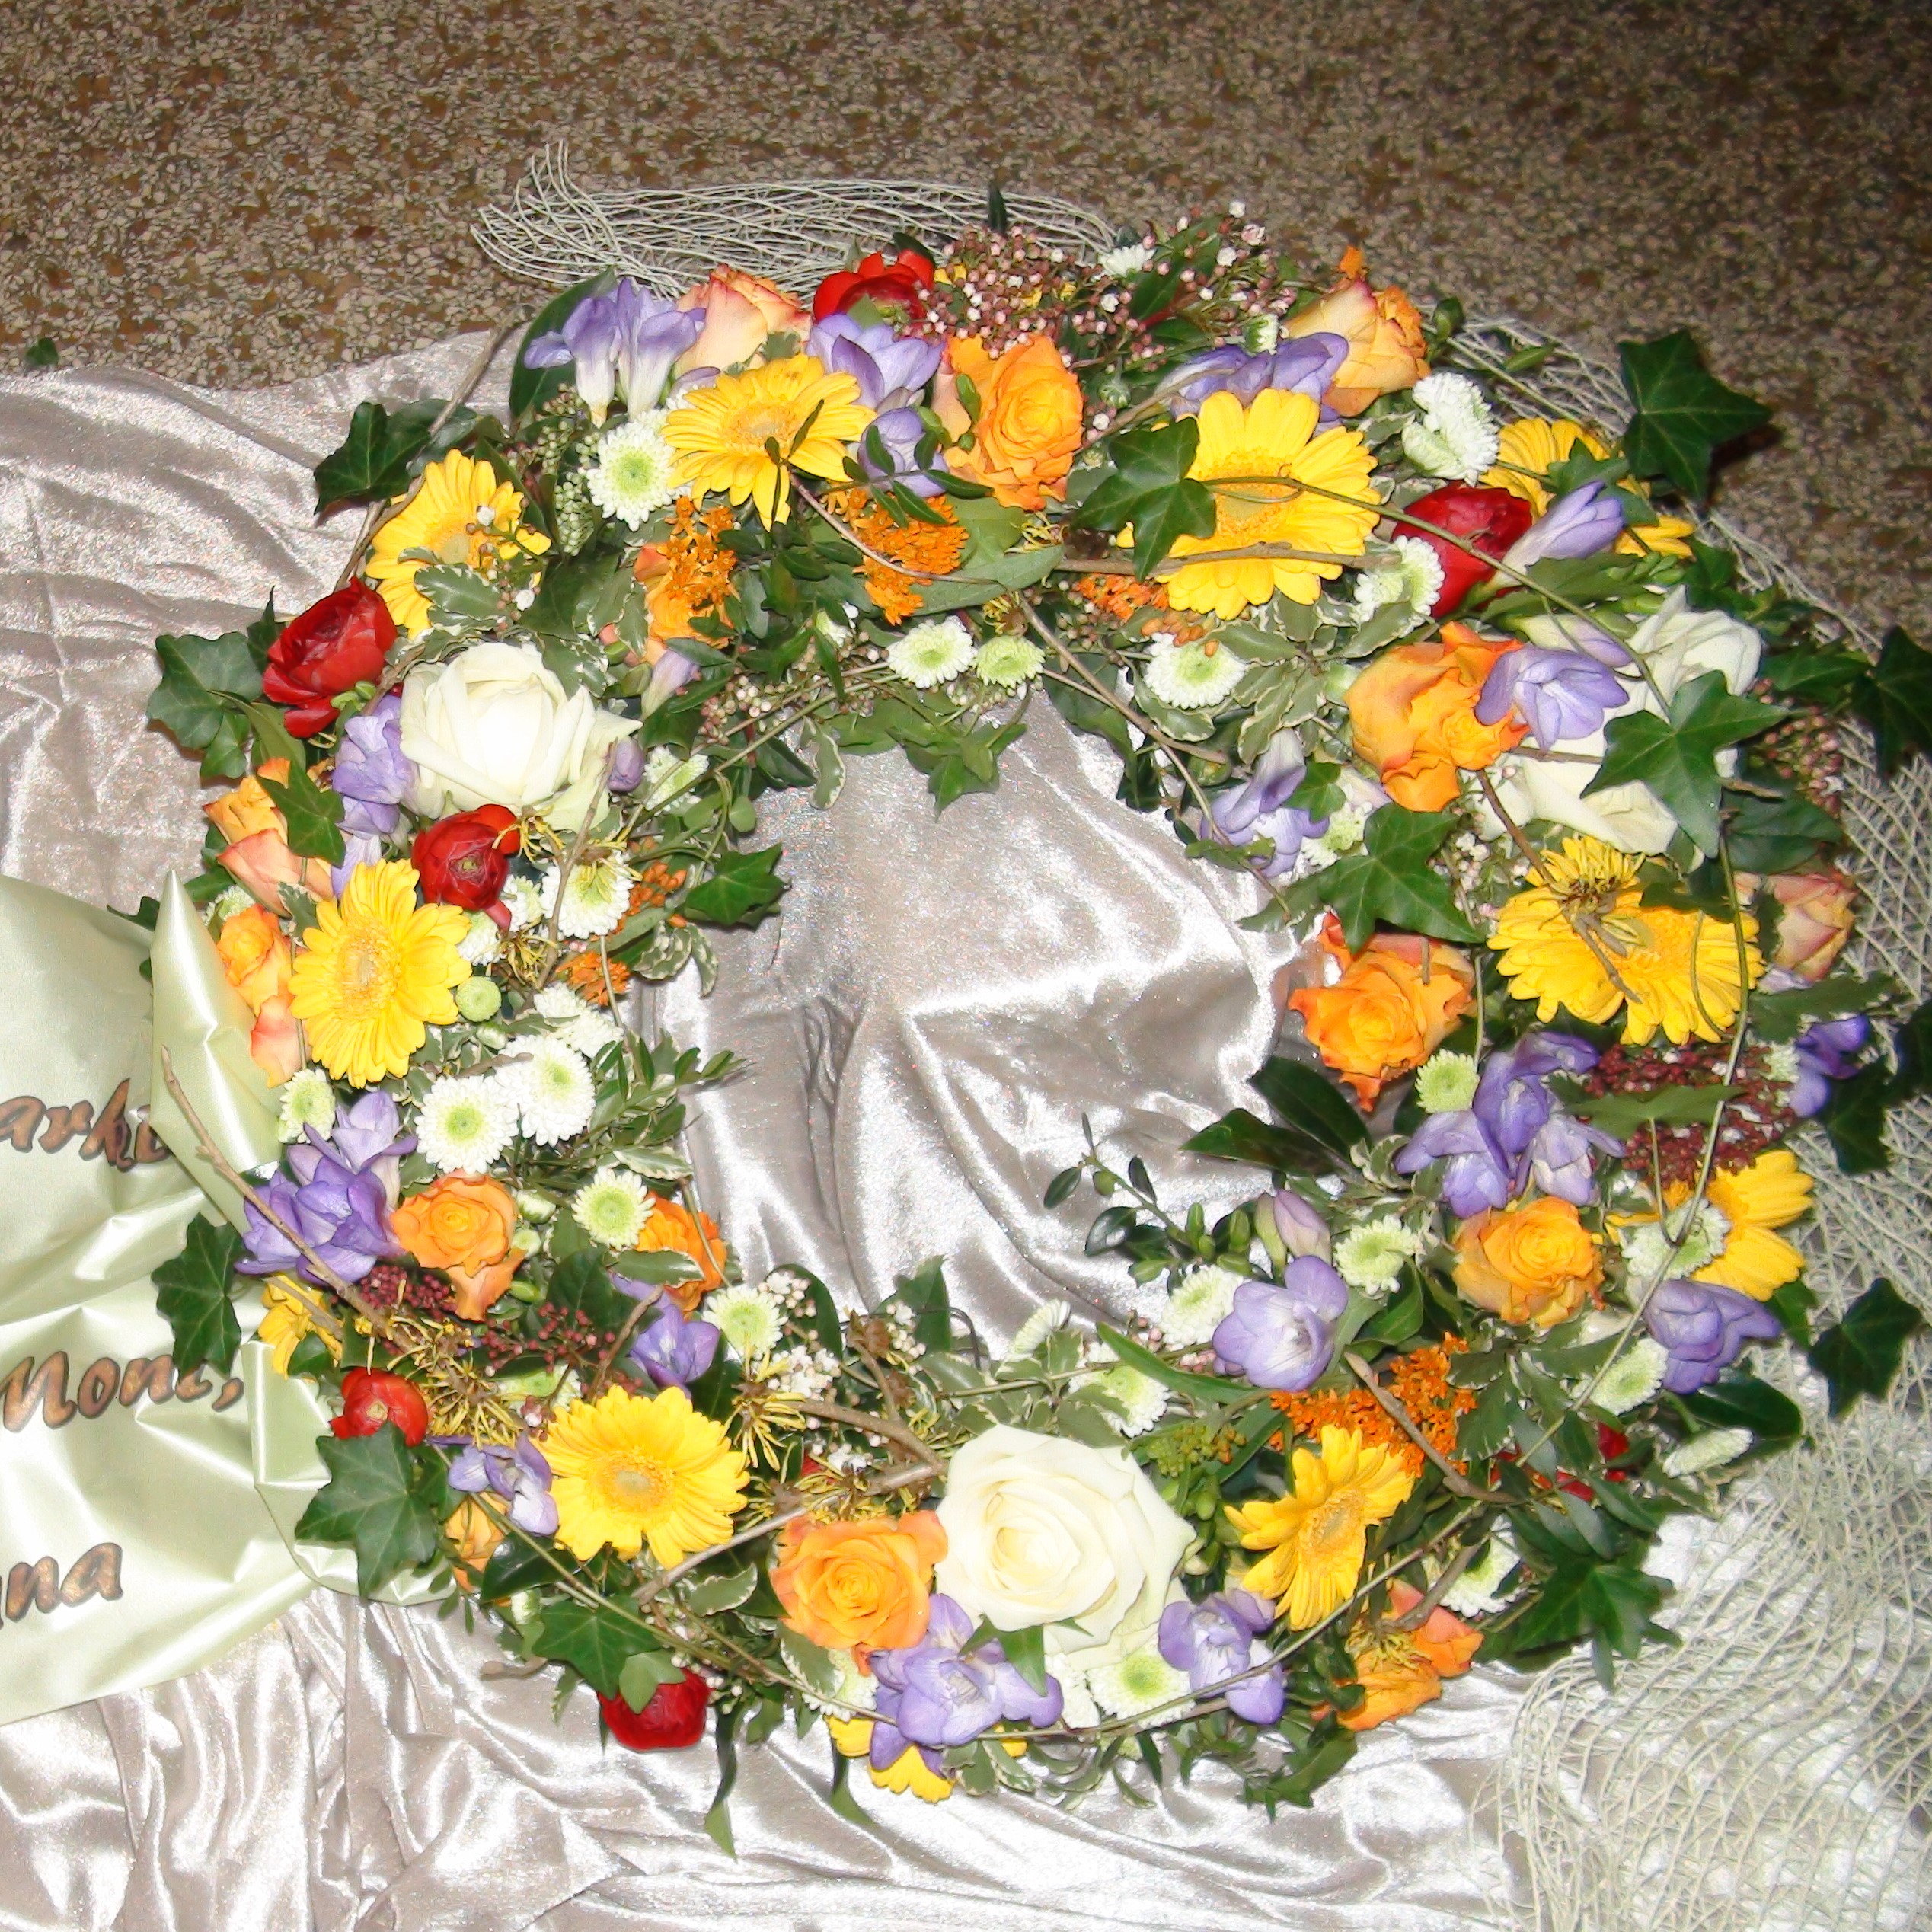 Trauerkranz rundgesteckt mit bunten Blumen der Saison Bild 1